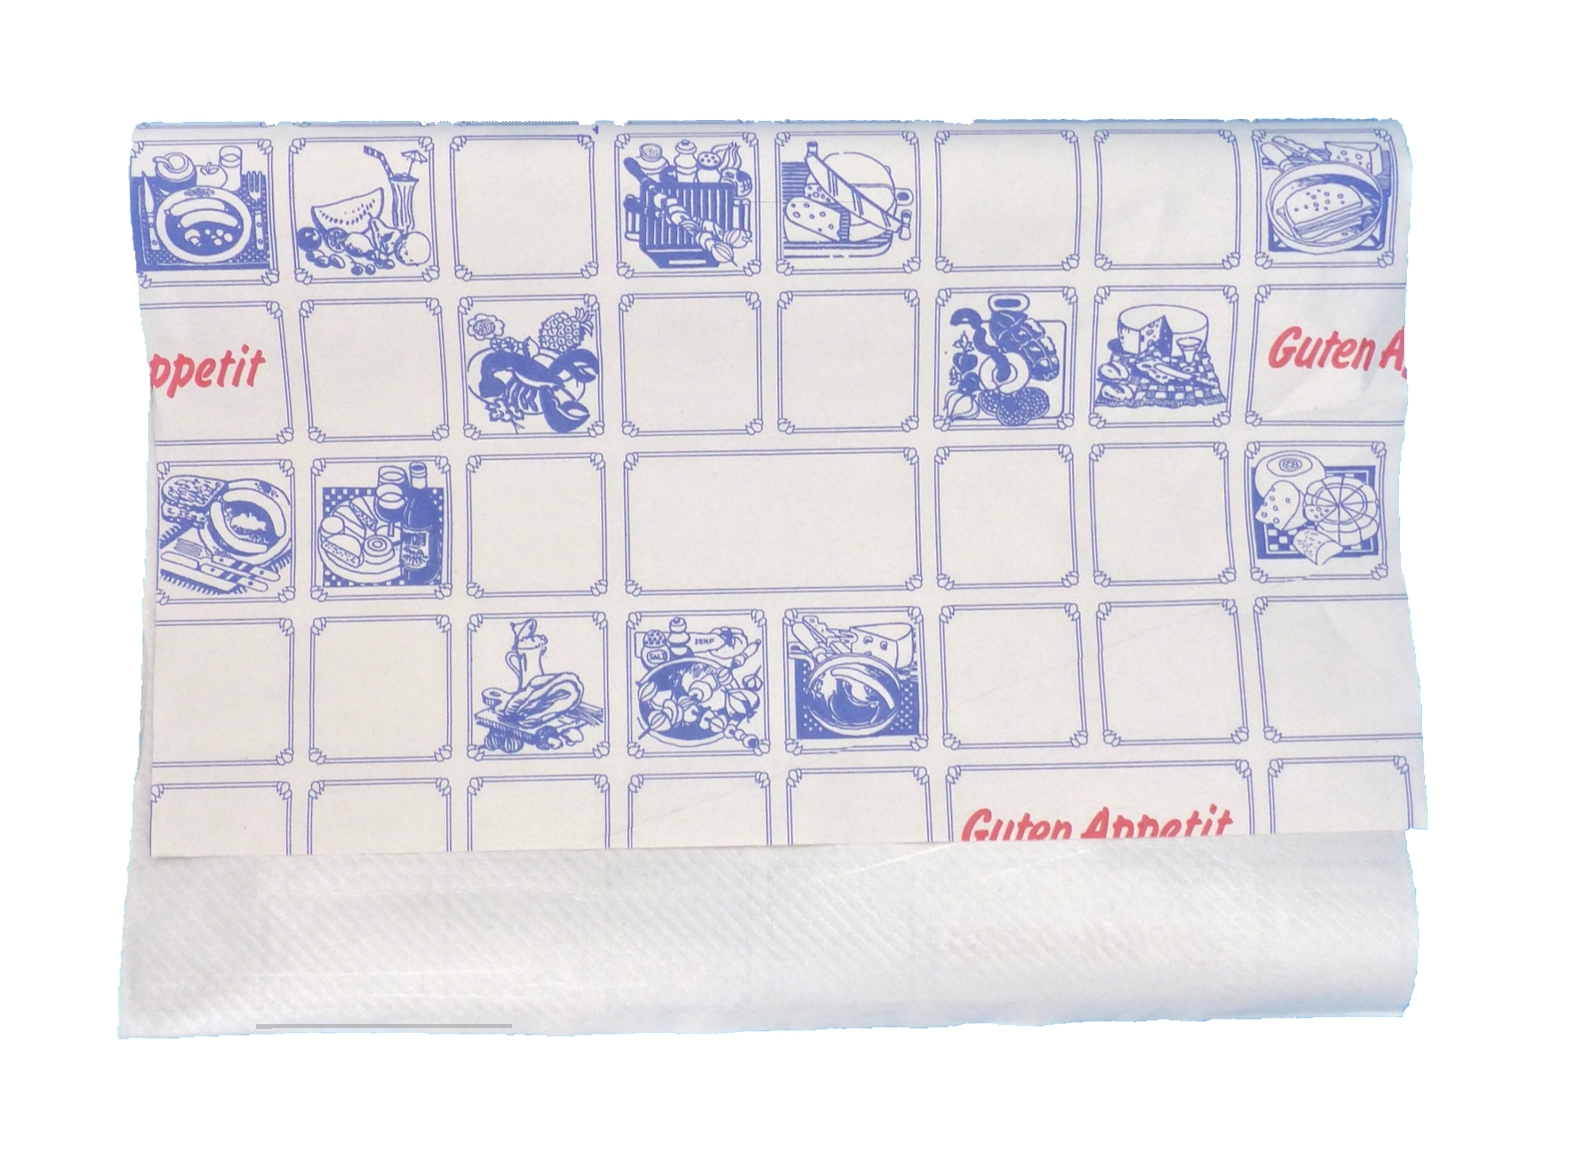 Frischpack 1/4, 50x37.5 cm, Karo blau-weiß, Typ 30, Papier & Folie, 12.5 kg